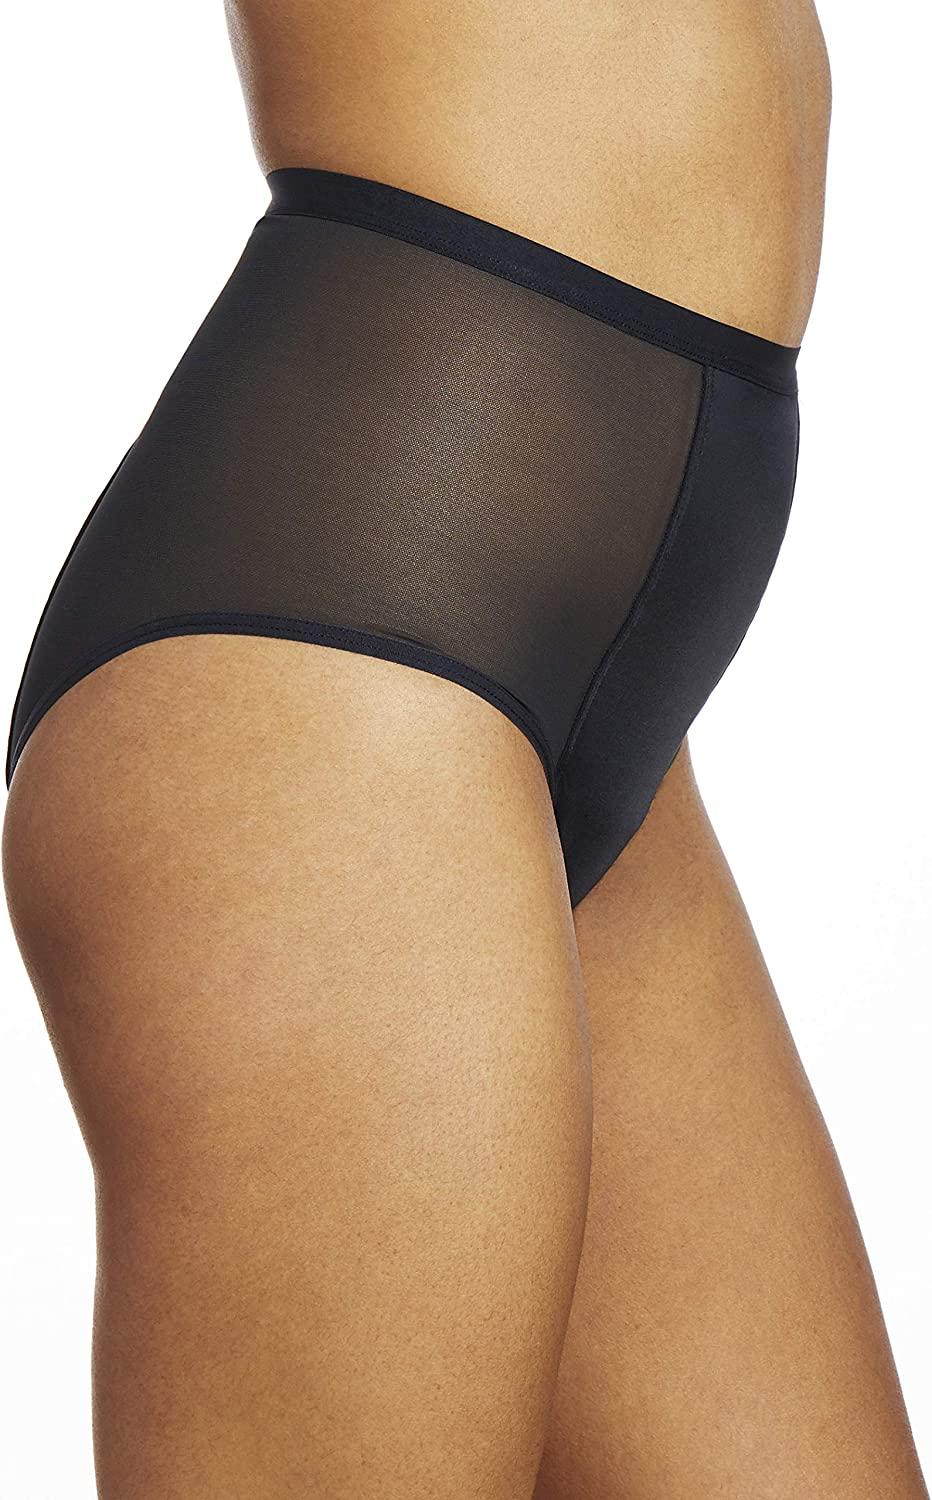 THINX Sport Period Underwear for Women, Holds up to 3 Regular